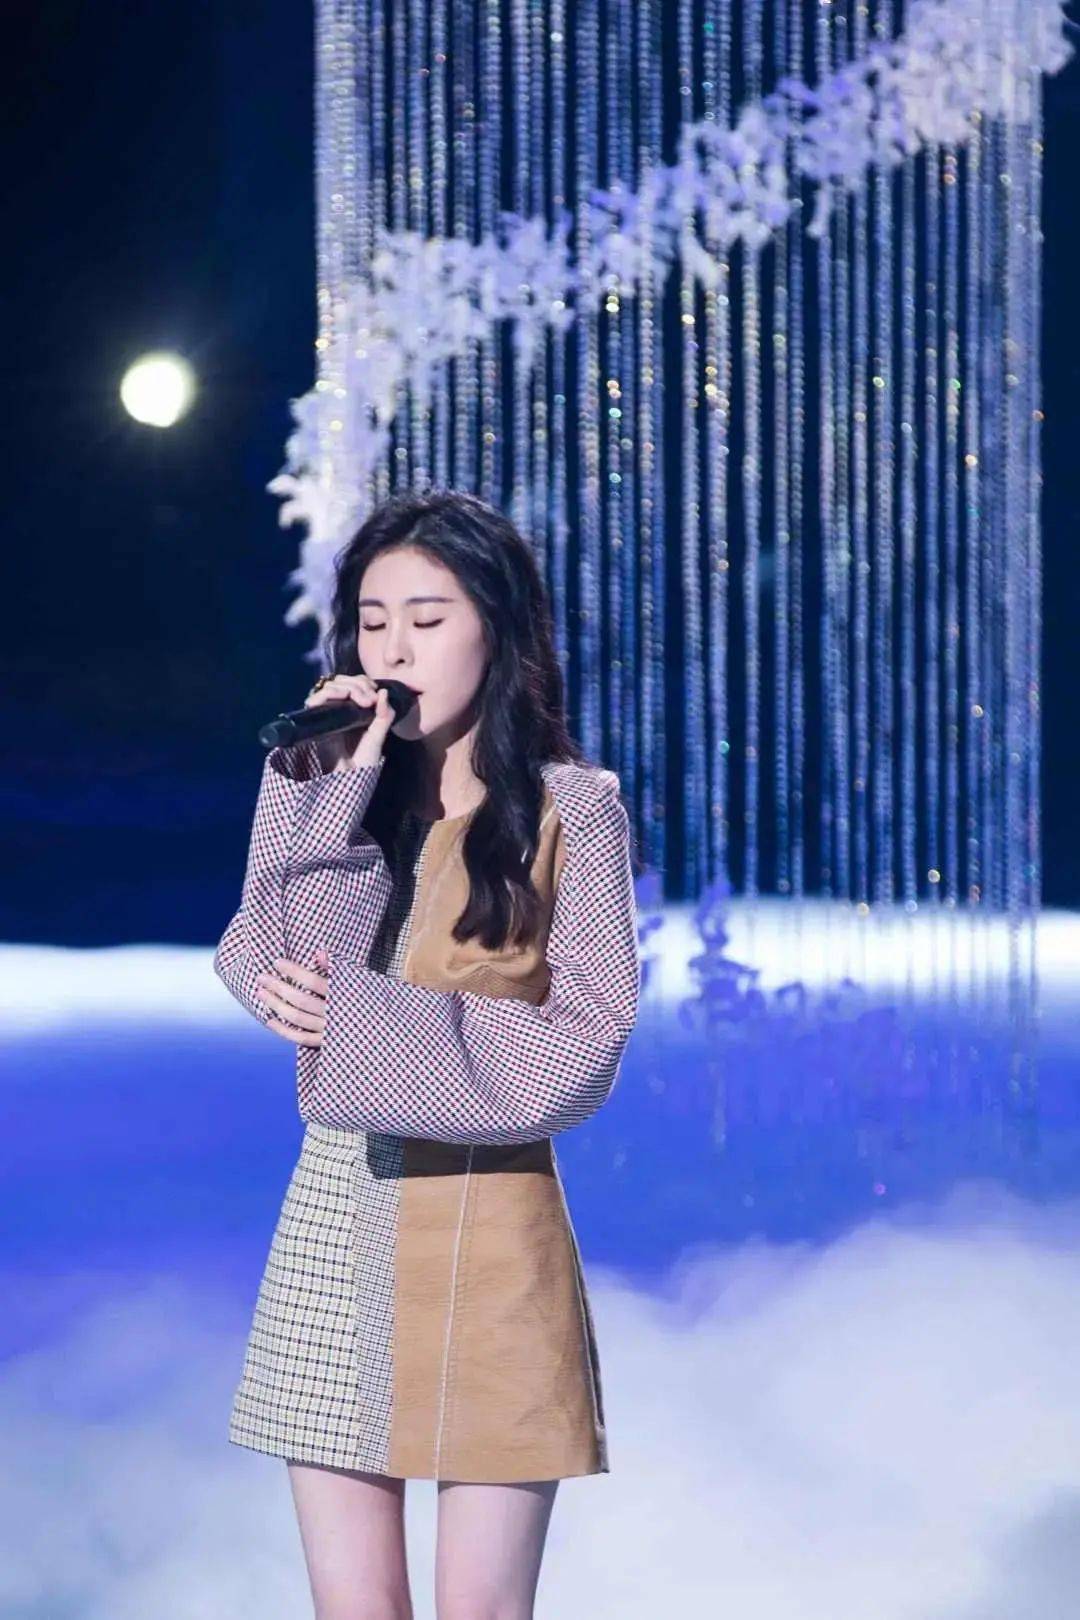 回国后的张碧晨参加了浙江卫视歌唱选秀节目《中国好声音第三季》,以